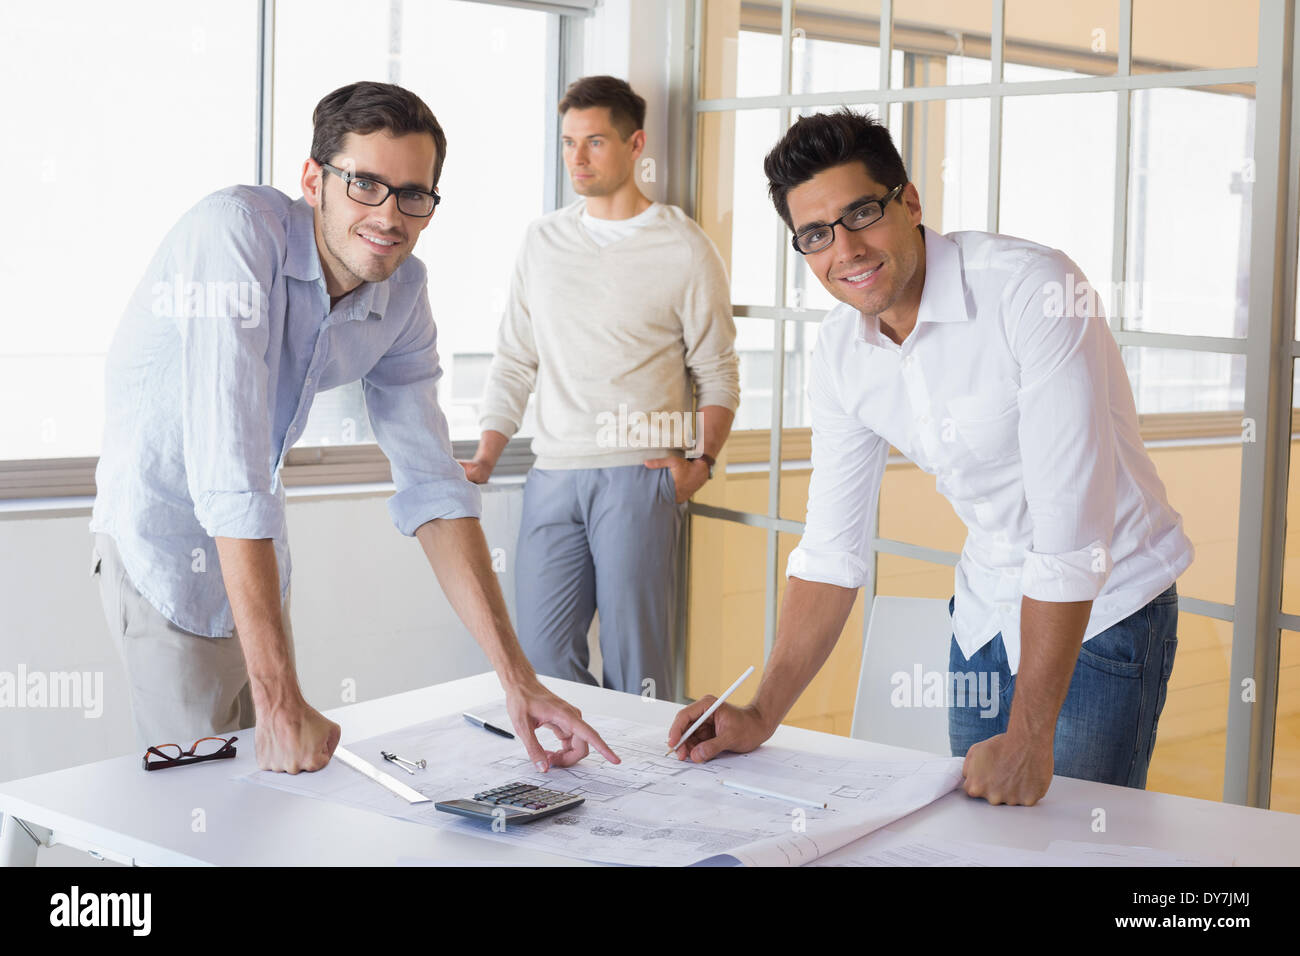 Lässige Architektur Team zusammenarbeiten an Rezeption lächelnd in die Kamera Stockfoto